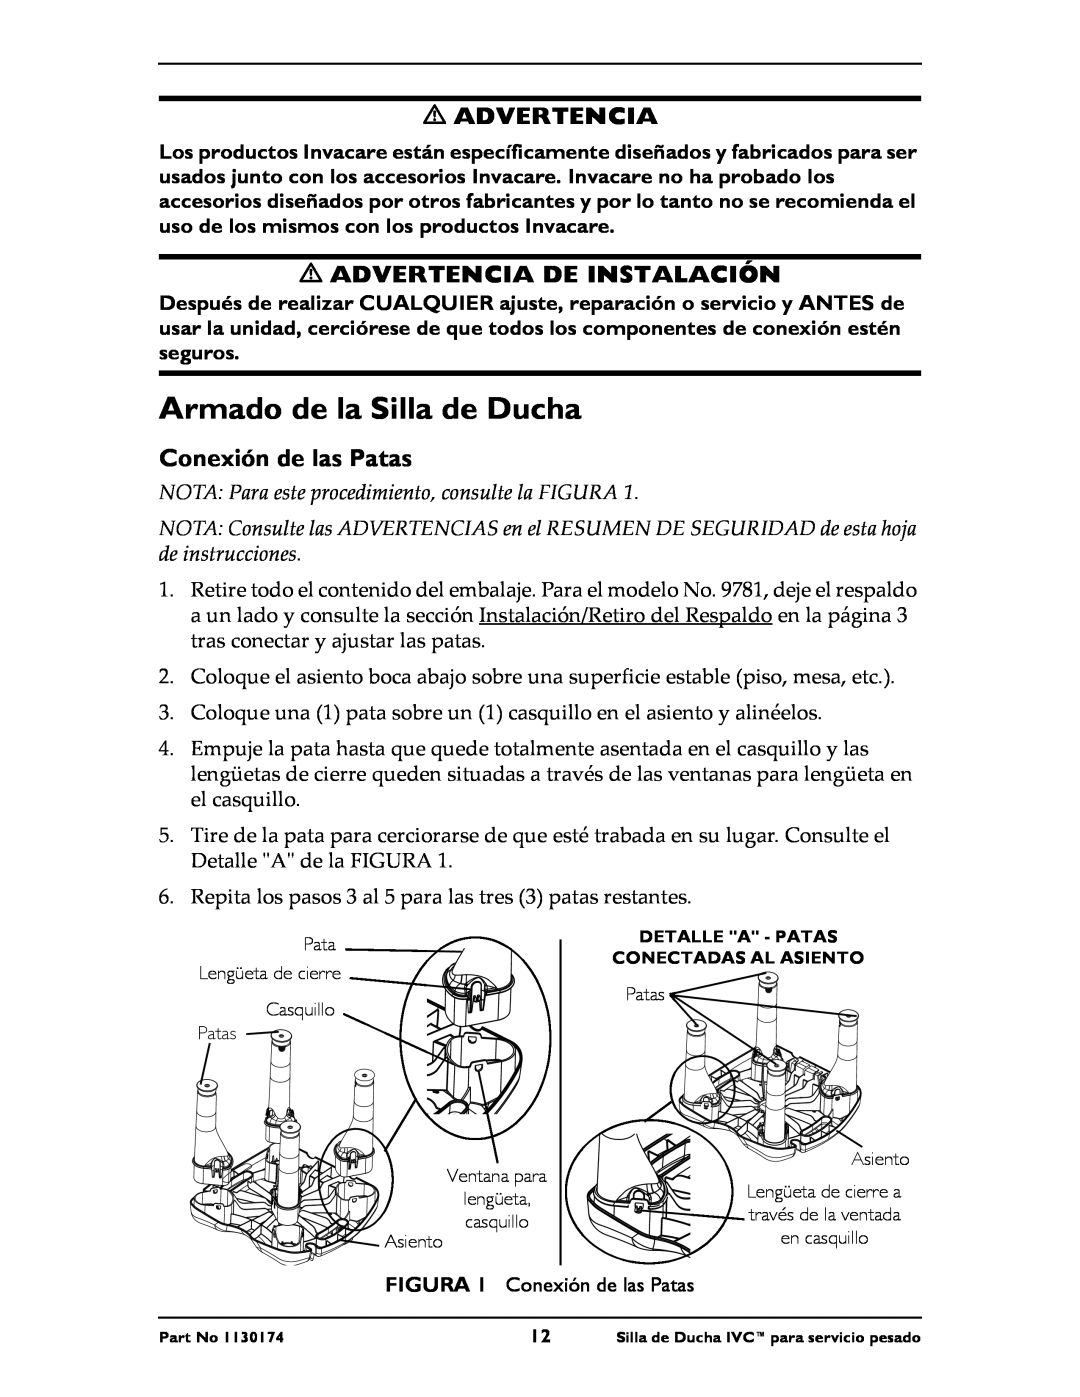 Invacare 9780E, 9781E instruction sheet Armado de la Silla de Ducha, Advertencia De Instalación, Conexión de las Patas 